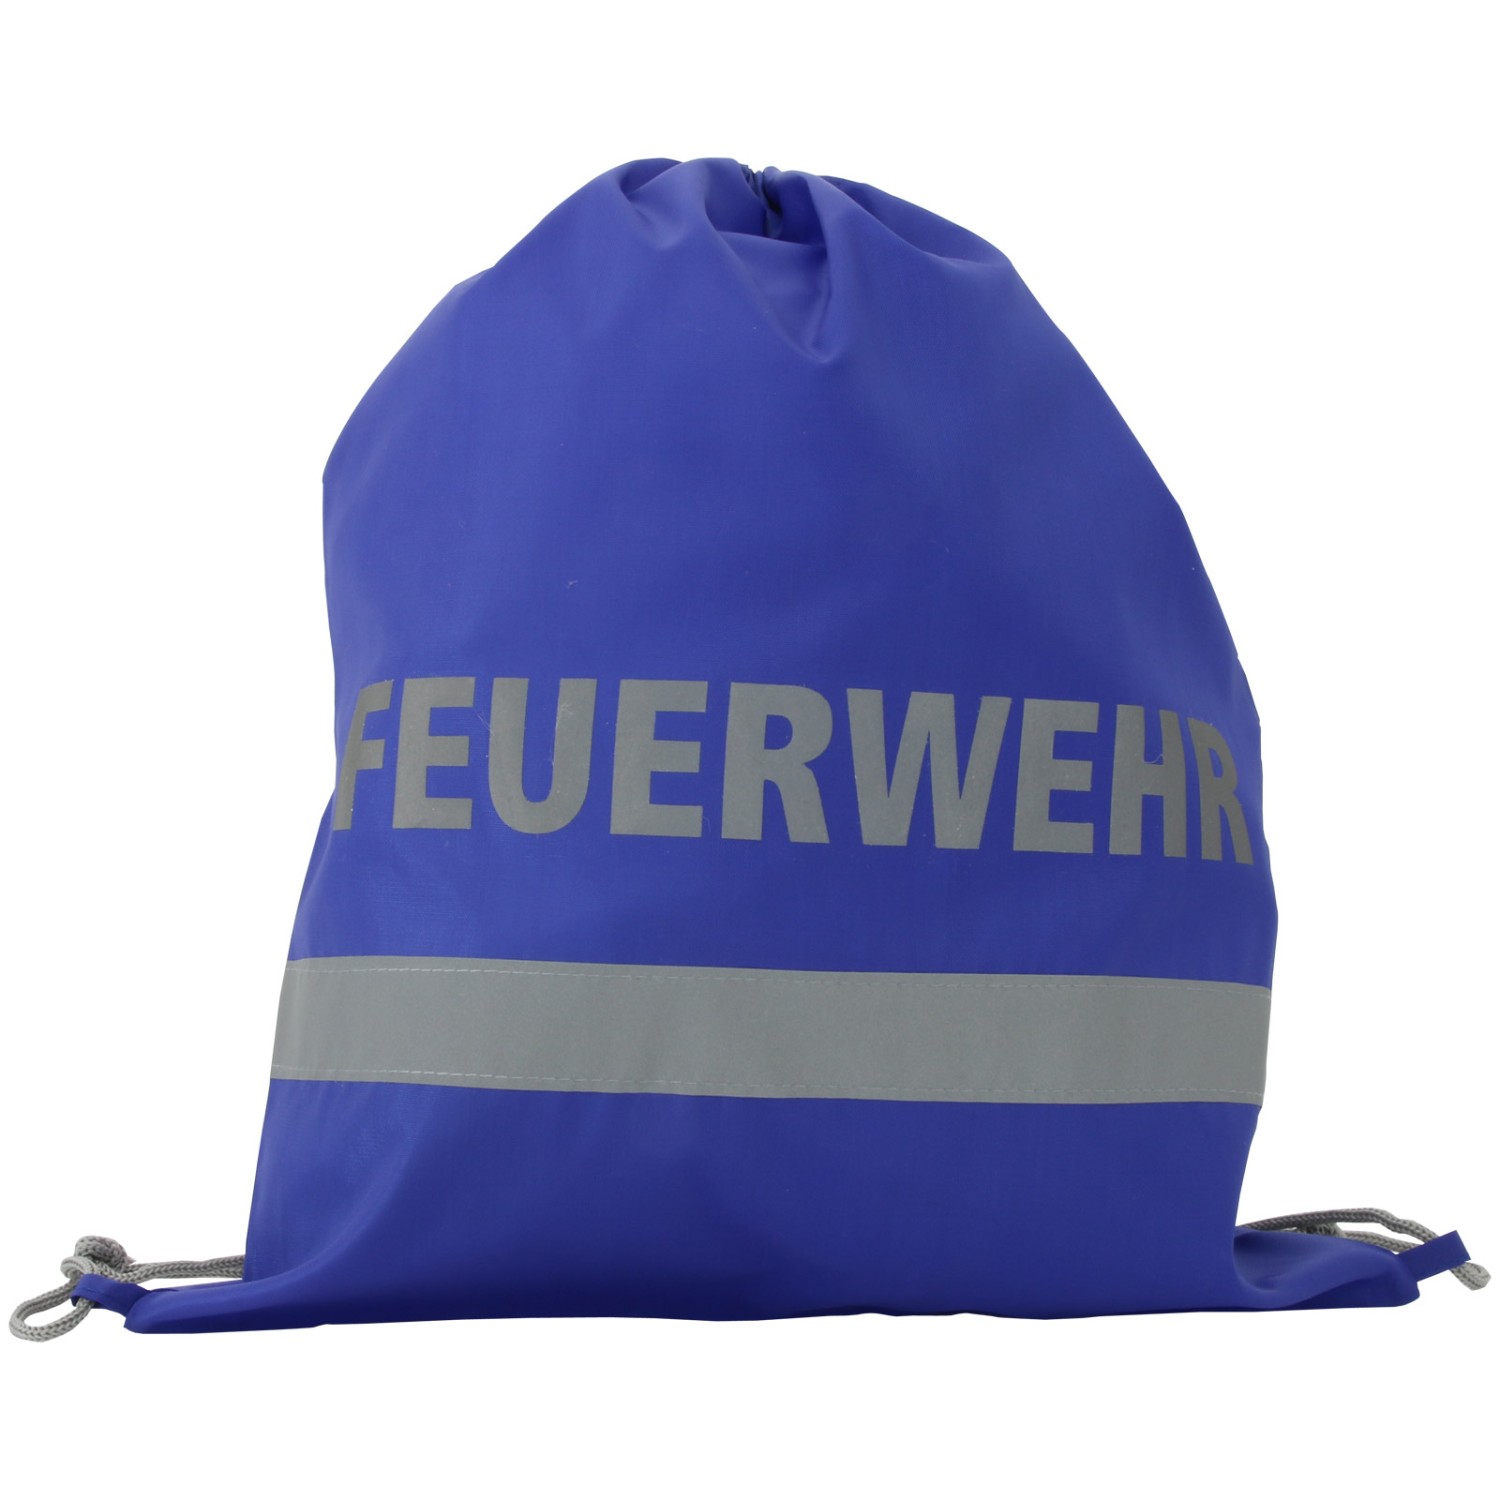 2. Foto Gymbag Rucksack Feuerwehr Turnbeutel Tasche blau reflektierend